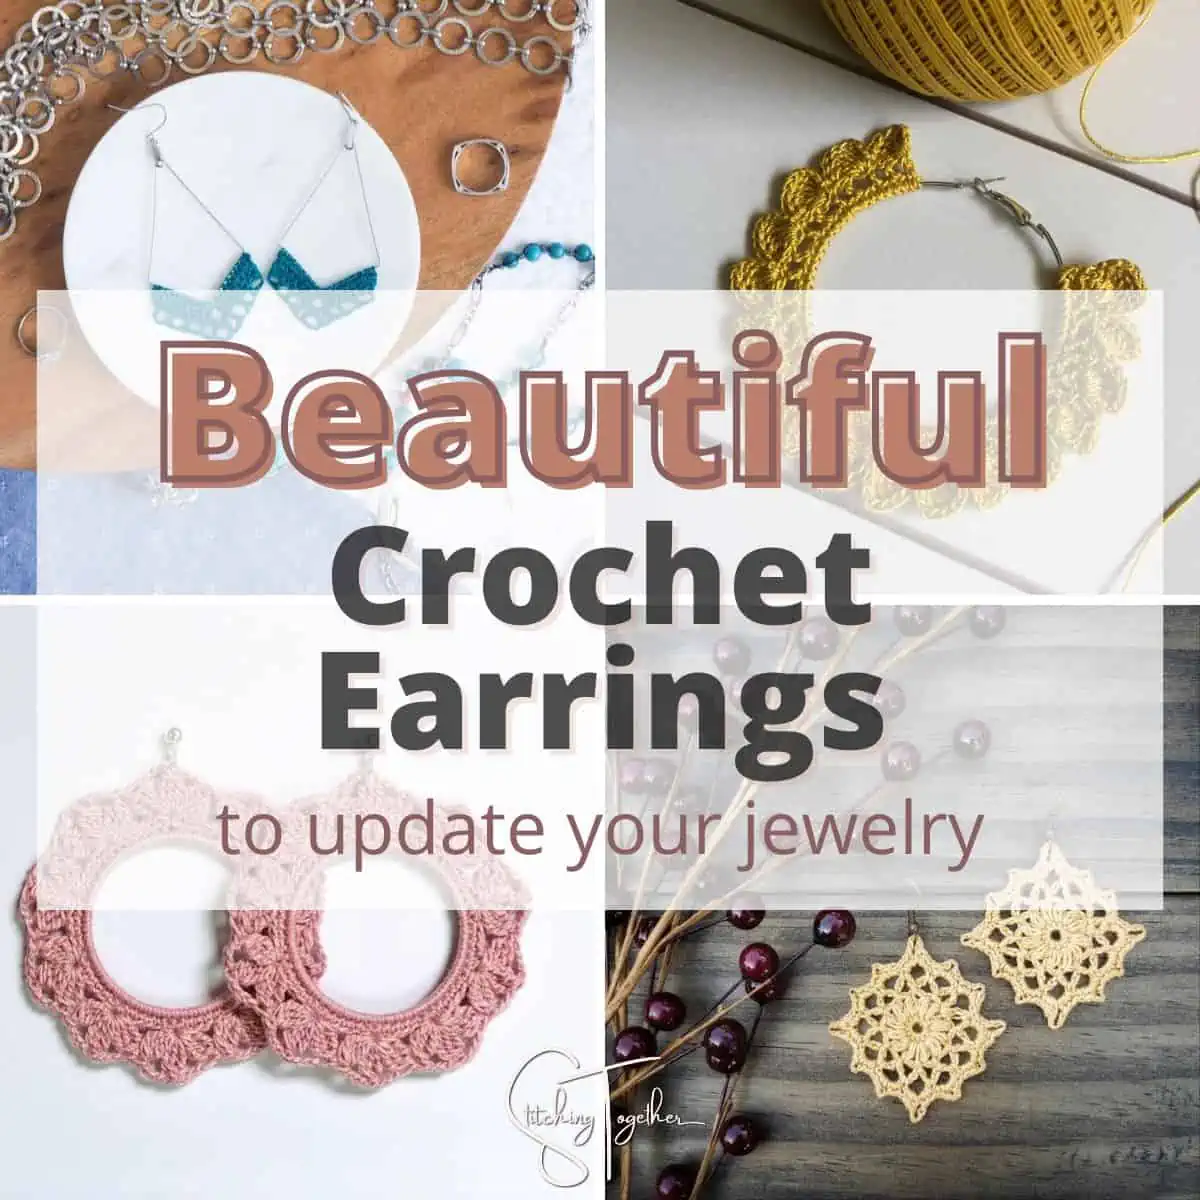 Beautiful Crochet Earrings Patterns